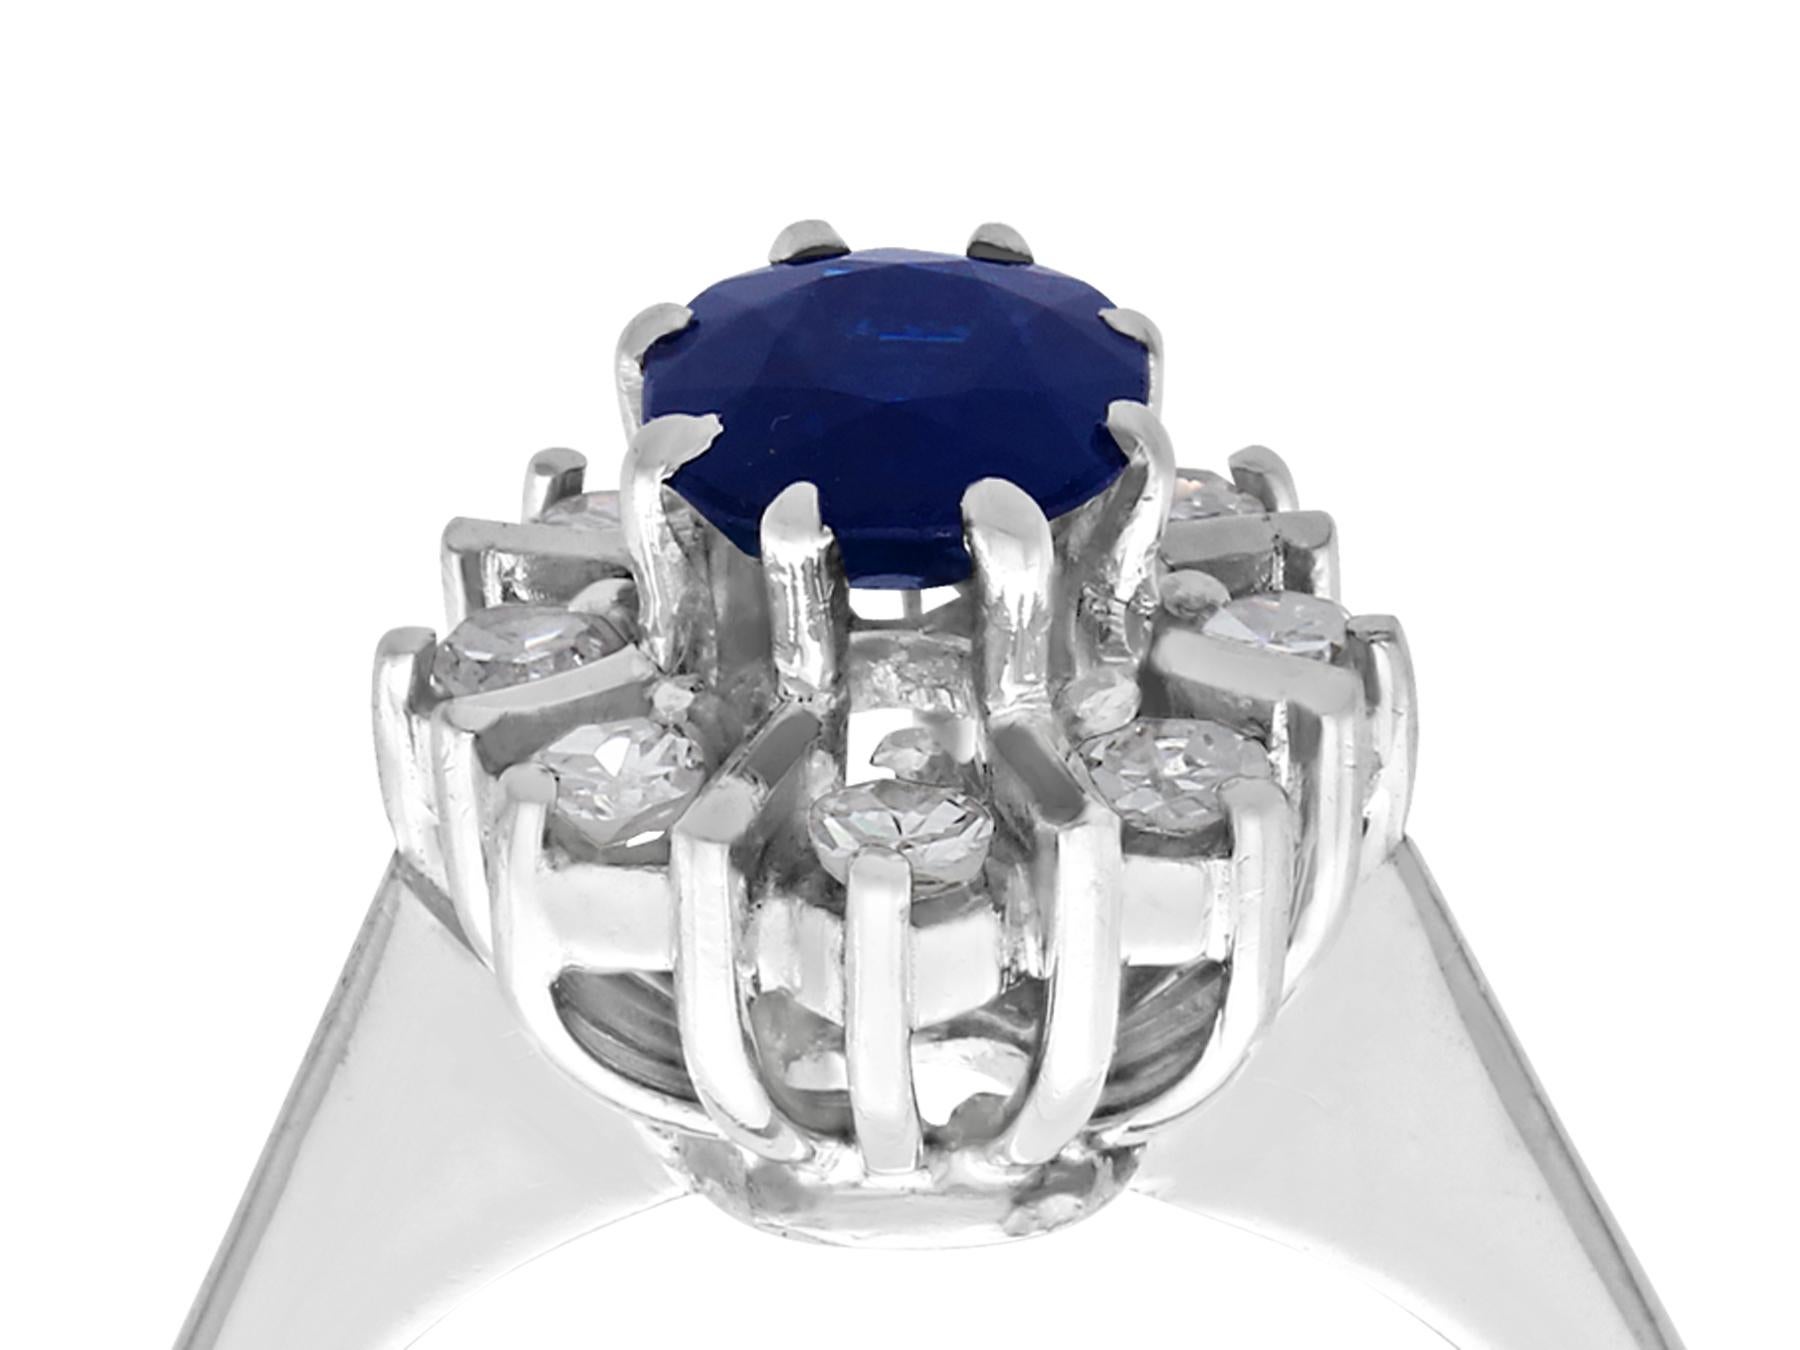 Ein beeindruckender Ring mit einem blauen Saphir von 1,42 Karat und einem Diamanten von 0,22 Karat aus 18-karätigem Weißgold, der Teil unserer vielfältigen Vintage- und Nachlass-Schmuckkollektionen ist.

Dieser schöne und beeindruckende Saphir- und